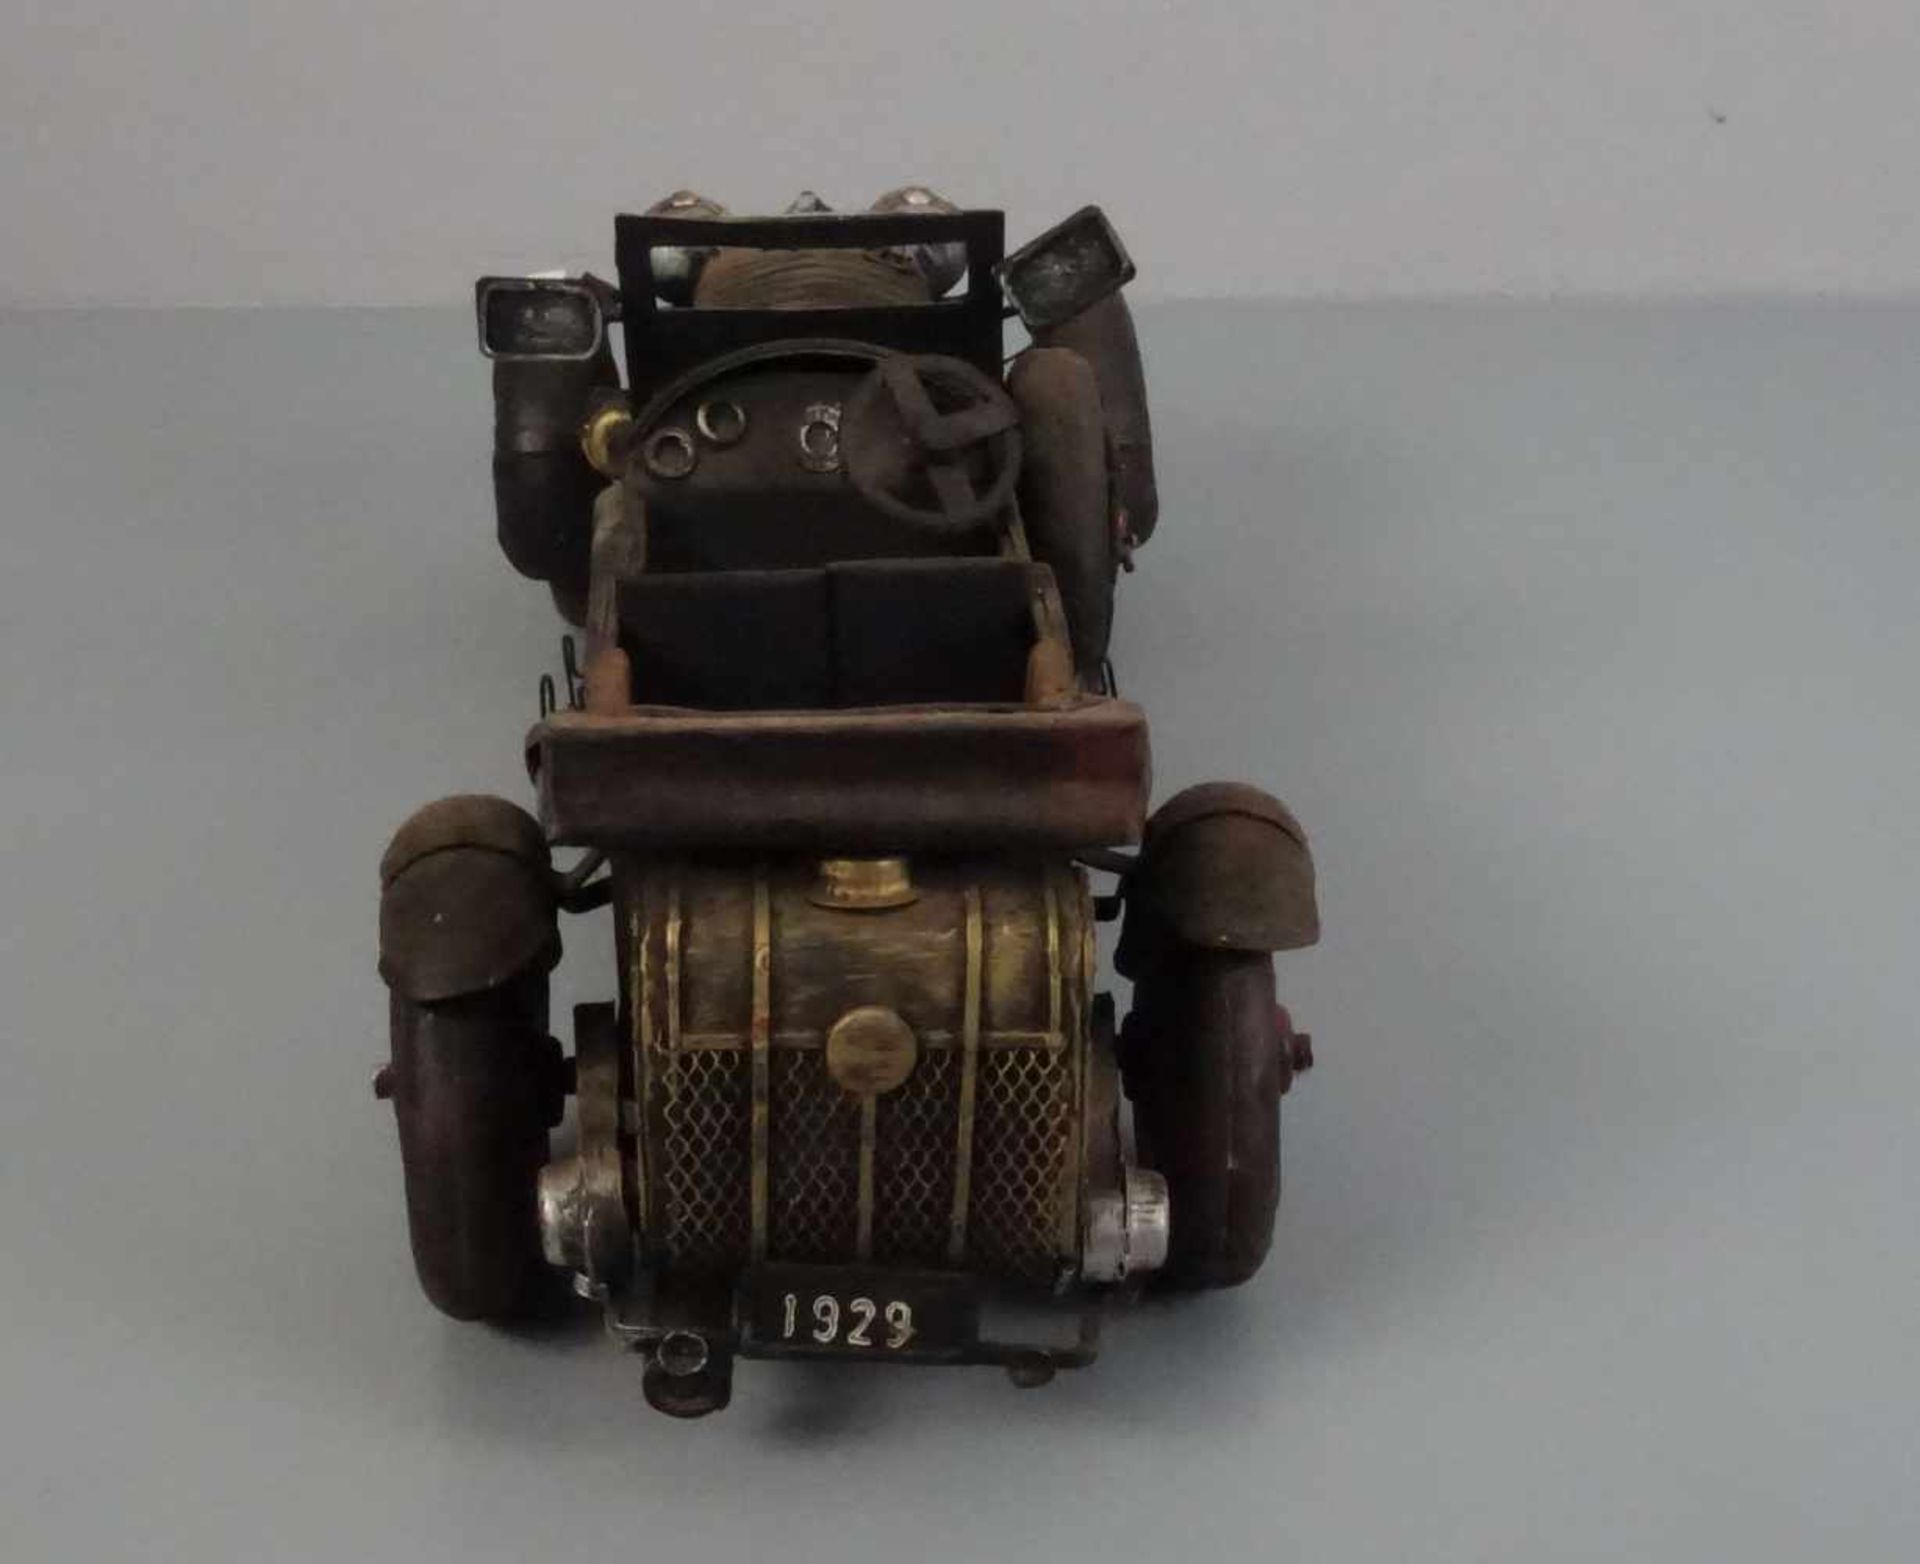 BLECHSPIELZEUG / MODELLAUTO "Oldtimer" / tin toy car, Eisenblech, teils durchbrochen gearbeitet - Image 4 of 5